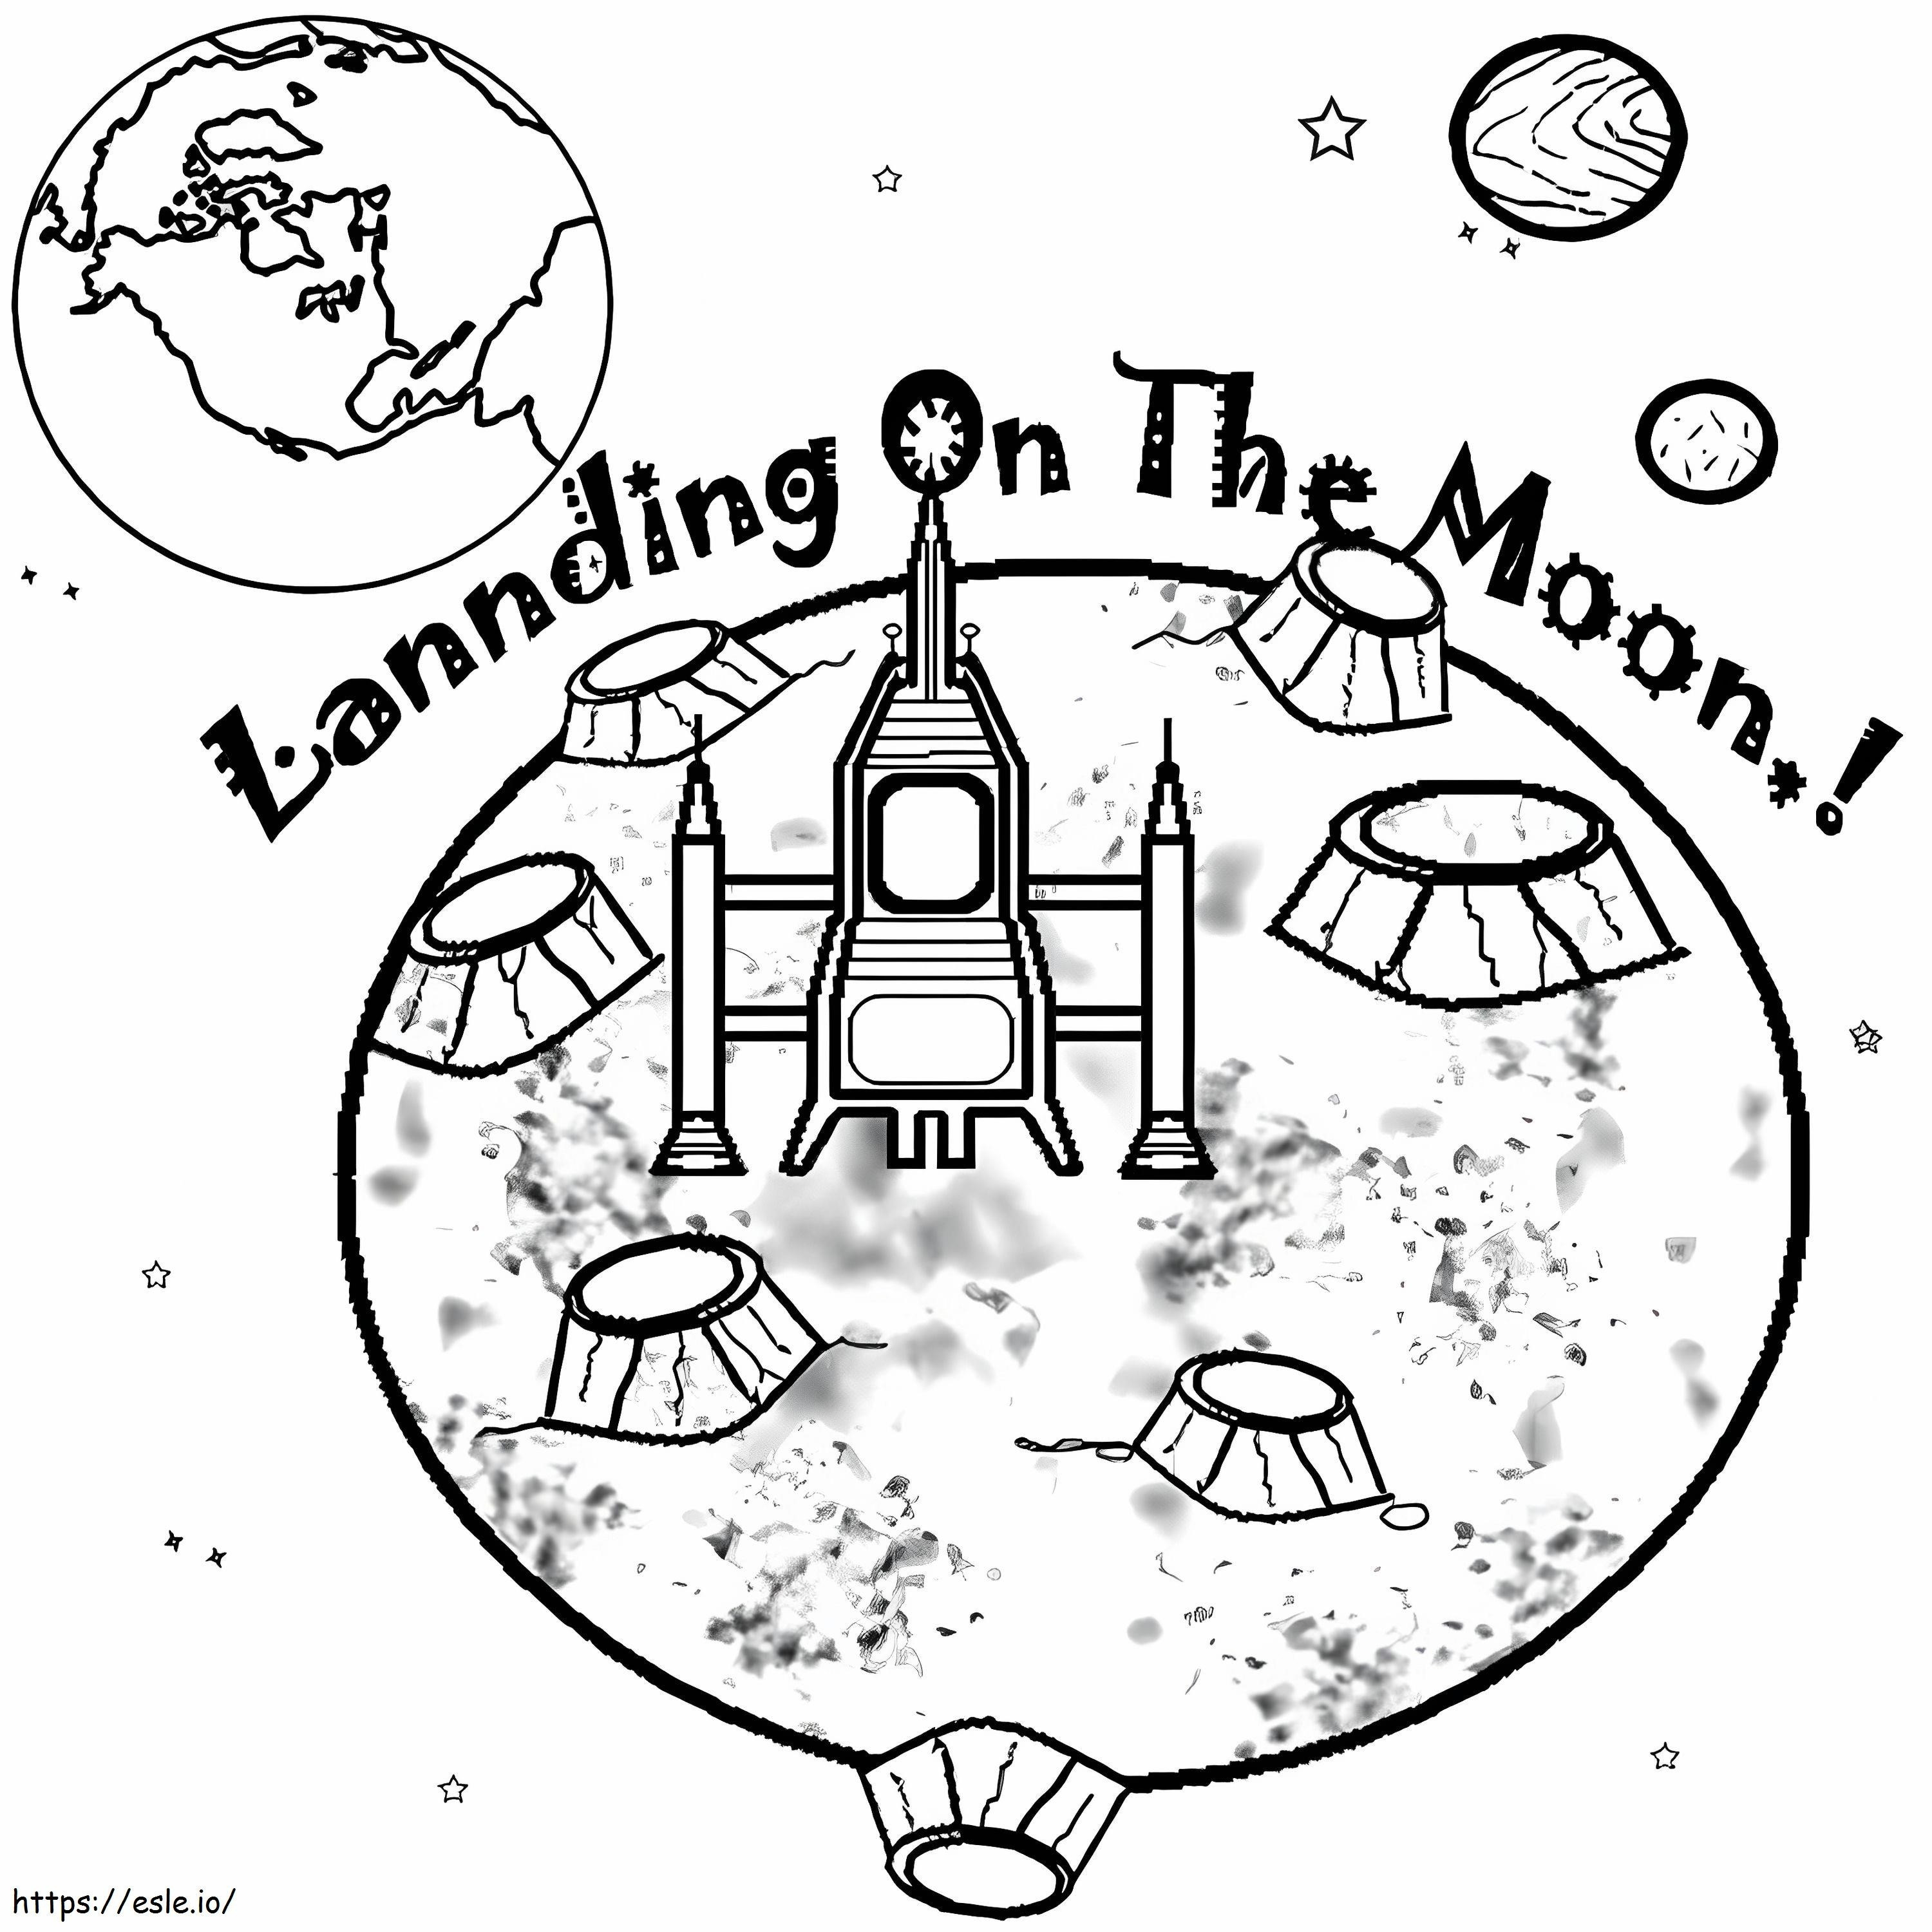 Landung auf dem Mond ausmalbilder